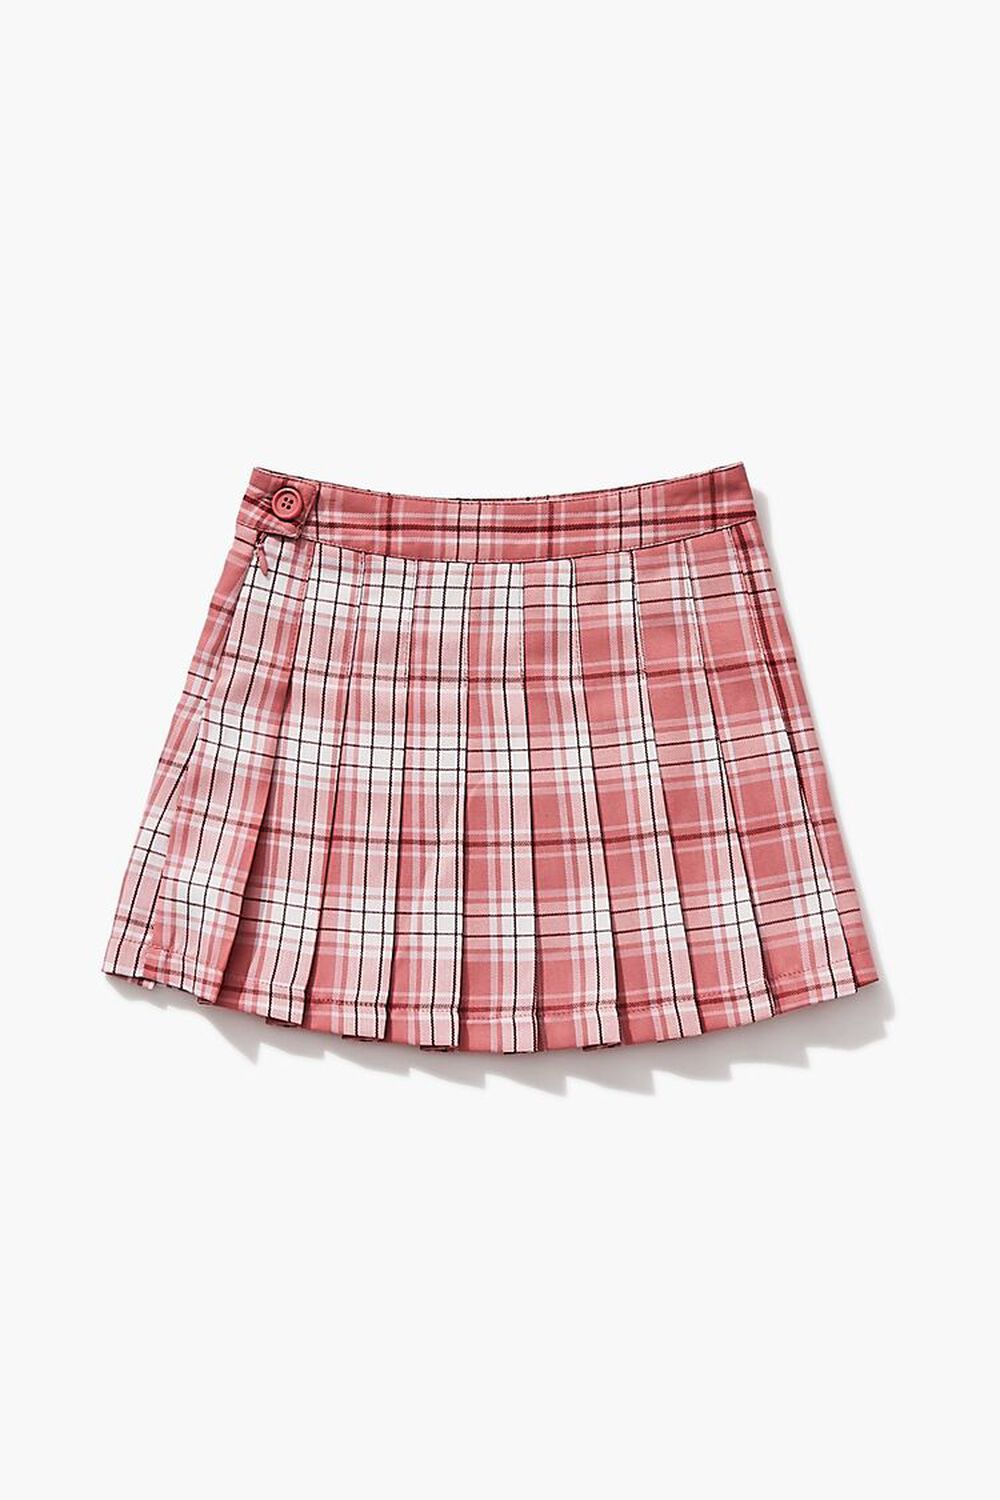 Girls Pleated Plaid Skirt (Kids), image 1